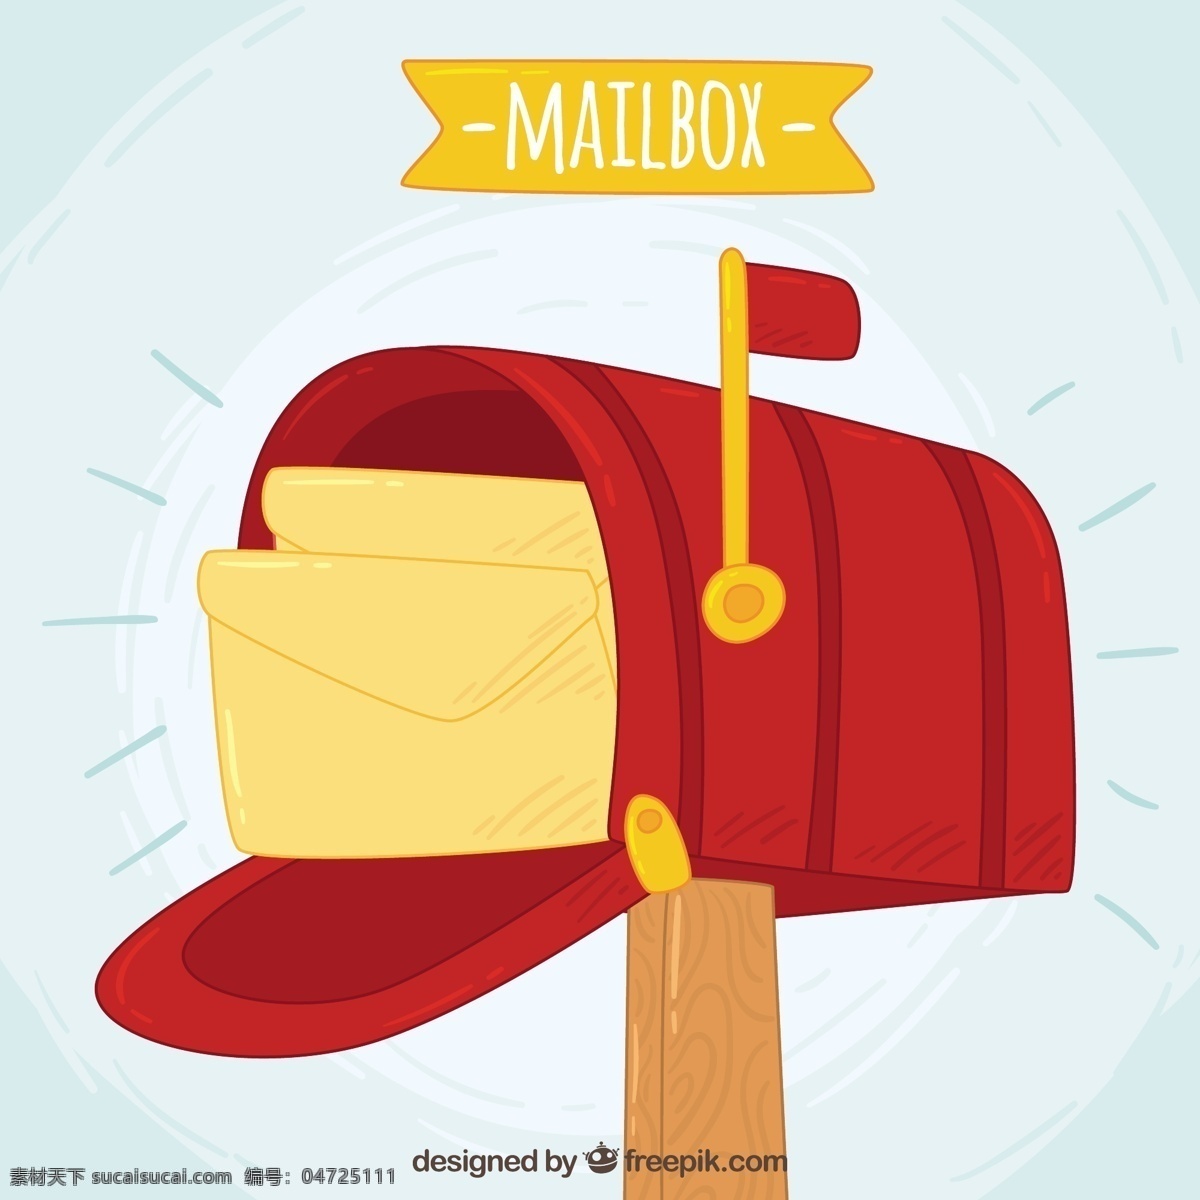 红色 邮箱 背景 手绘 信封 手 盒子 递送 电子邮件 通信 绘图 邮寄 邮政 发送 邮资